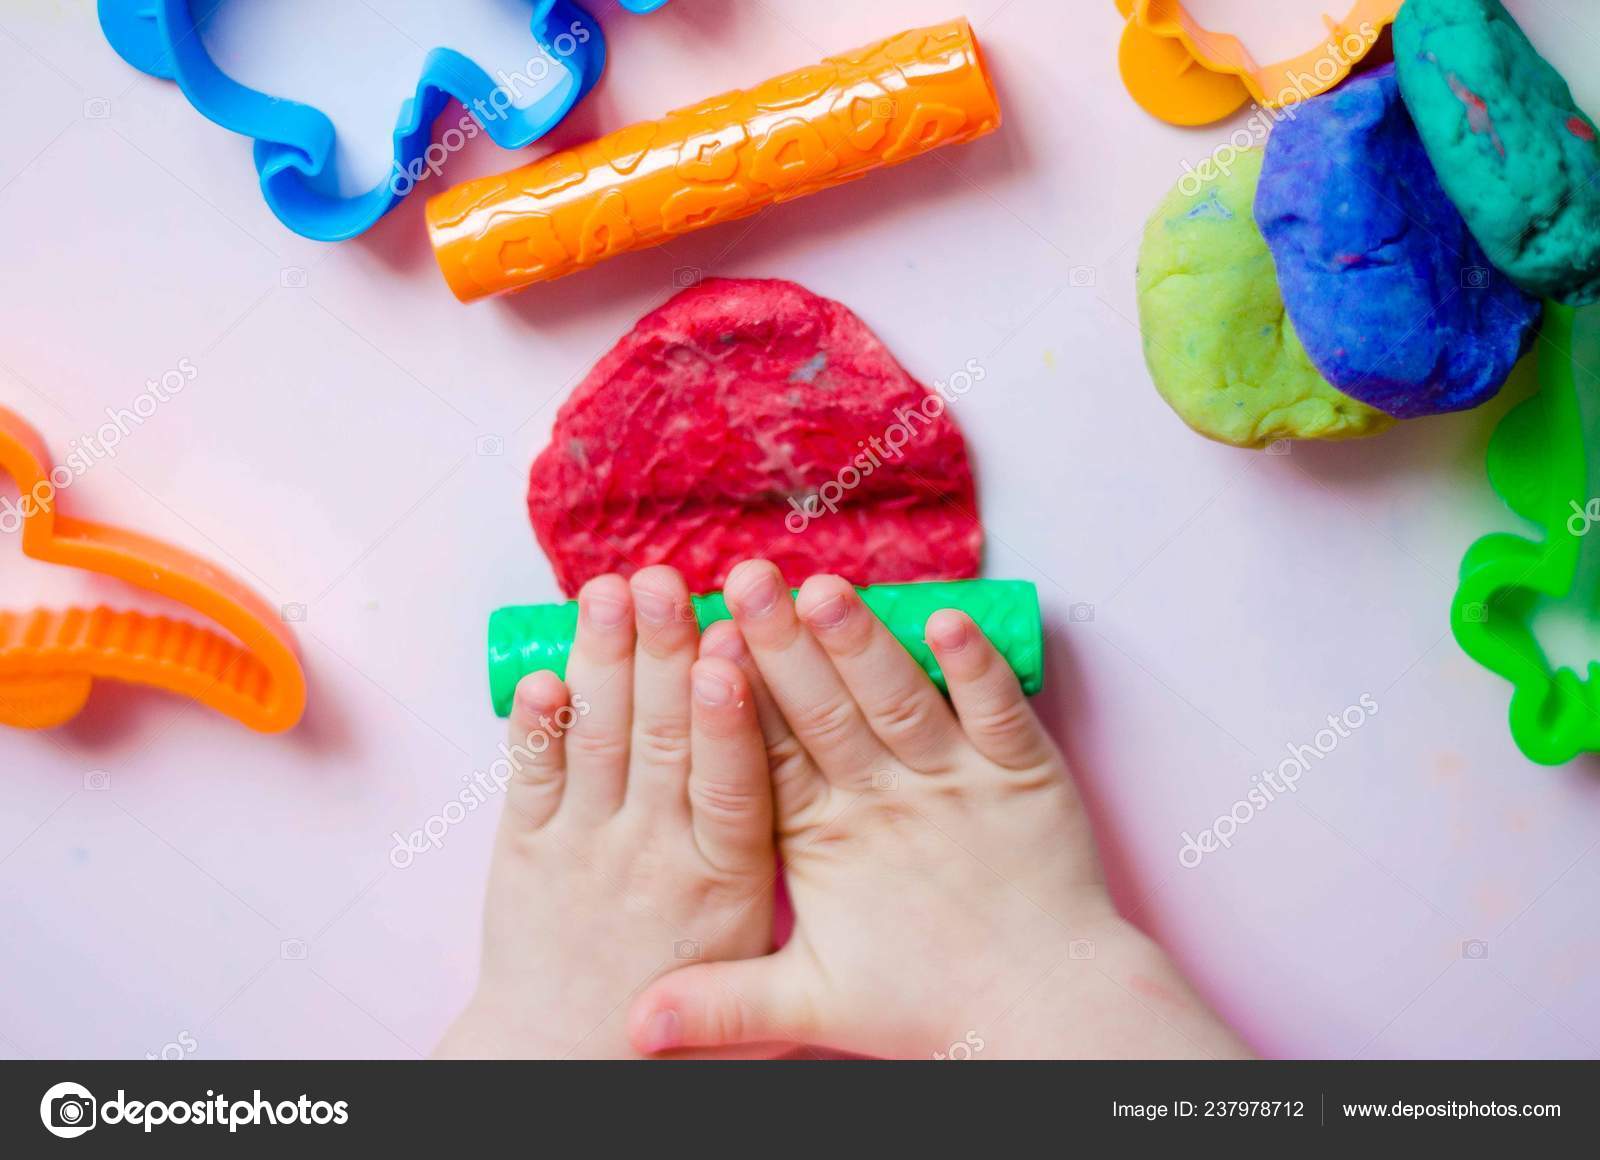 Можно красить пластилин. Пластилин для детей. Пластилин в руках. Ребенок раскатывает пластилин. Пластилин в руках у детей.